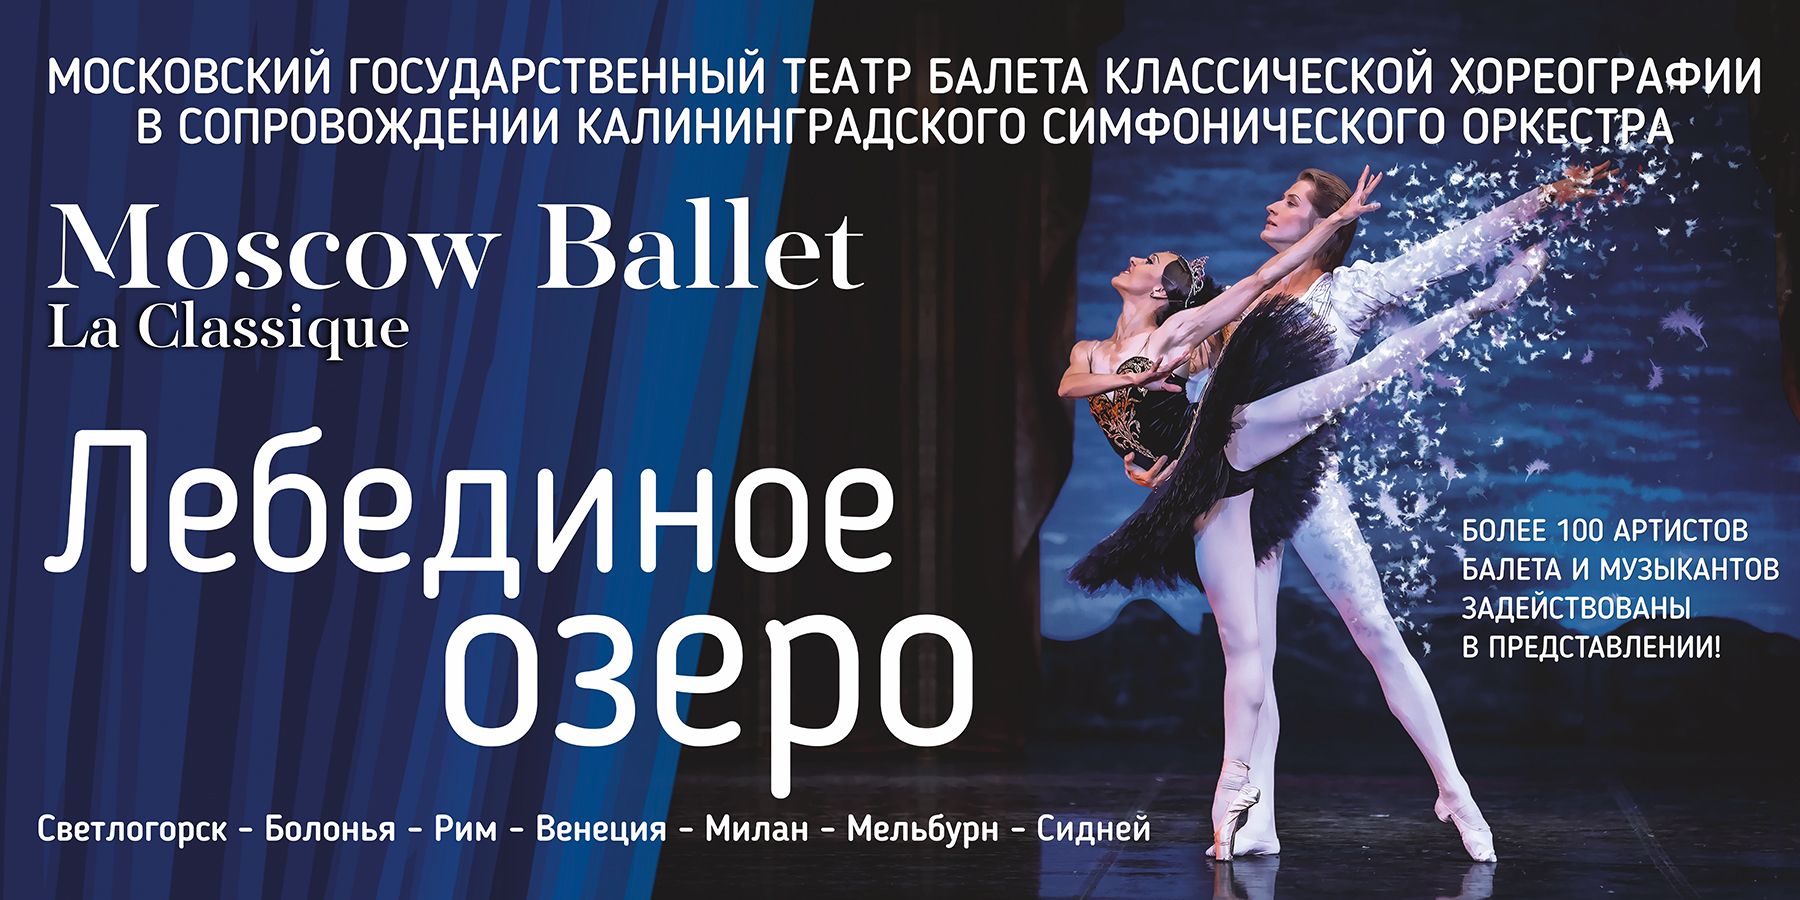 Балет “Лебединое озеро” в исполнении La Classique Moscow Ballet.